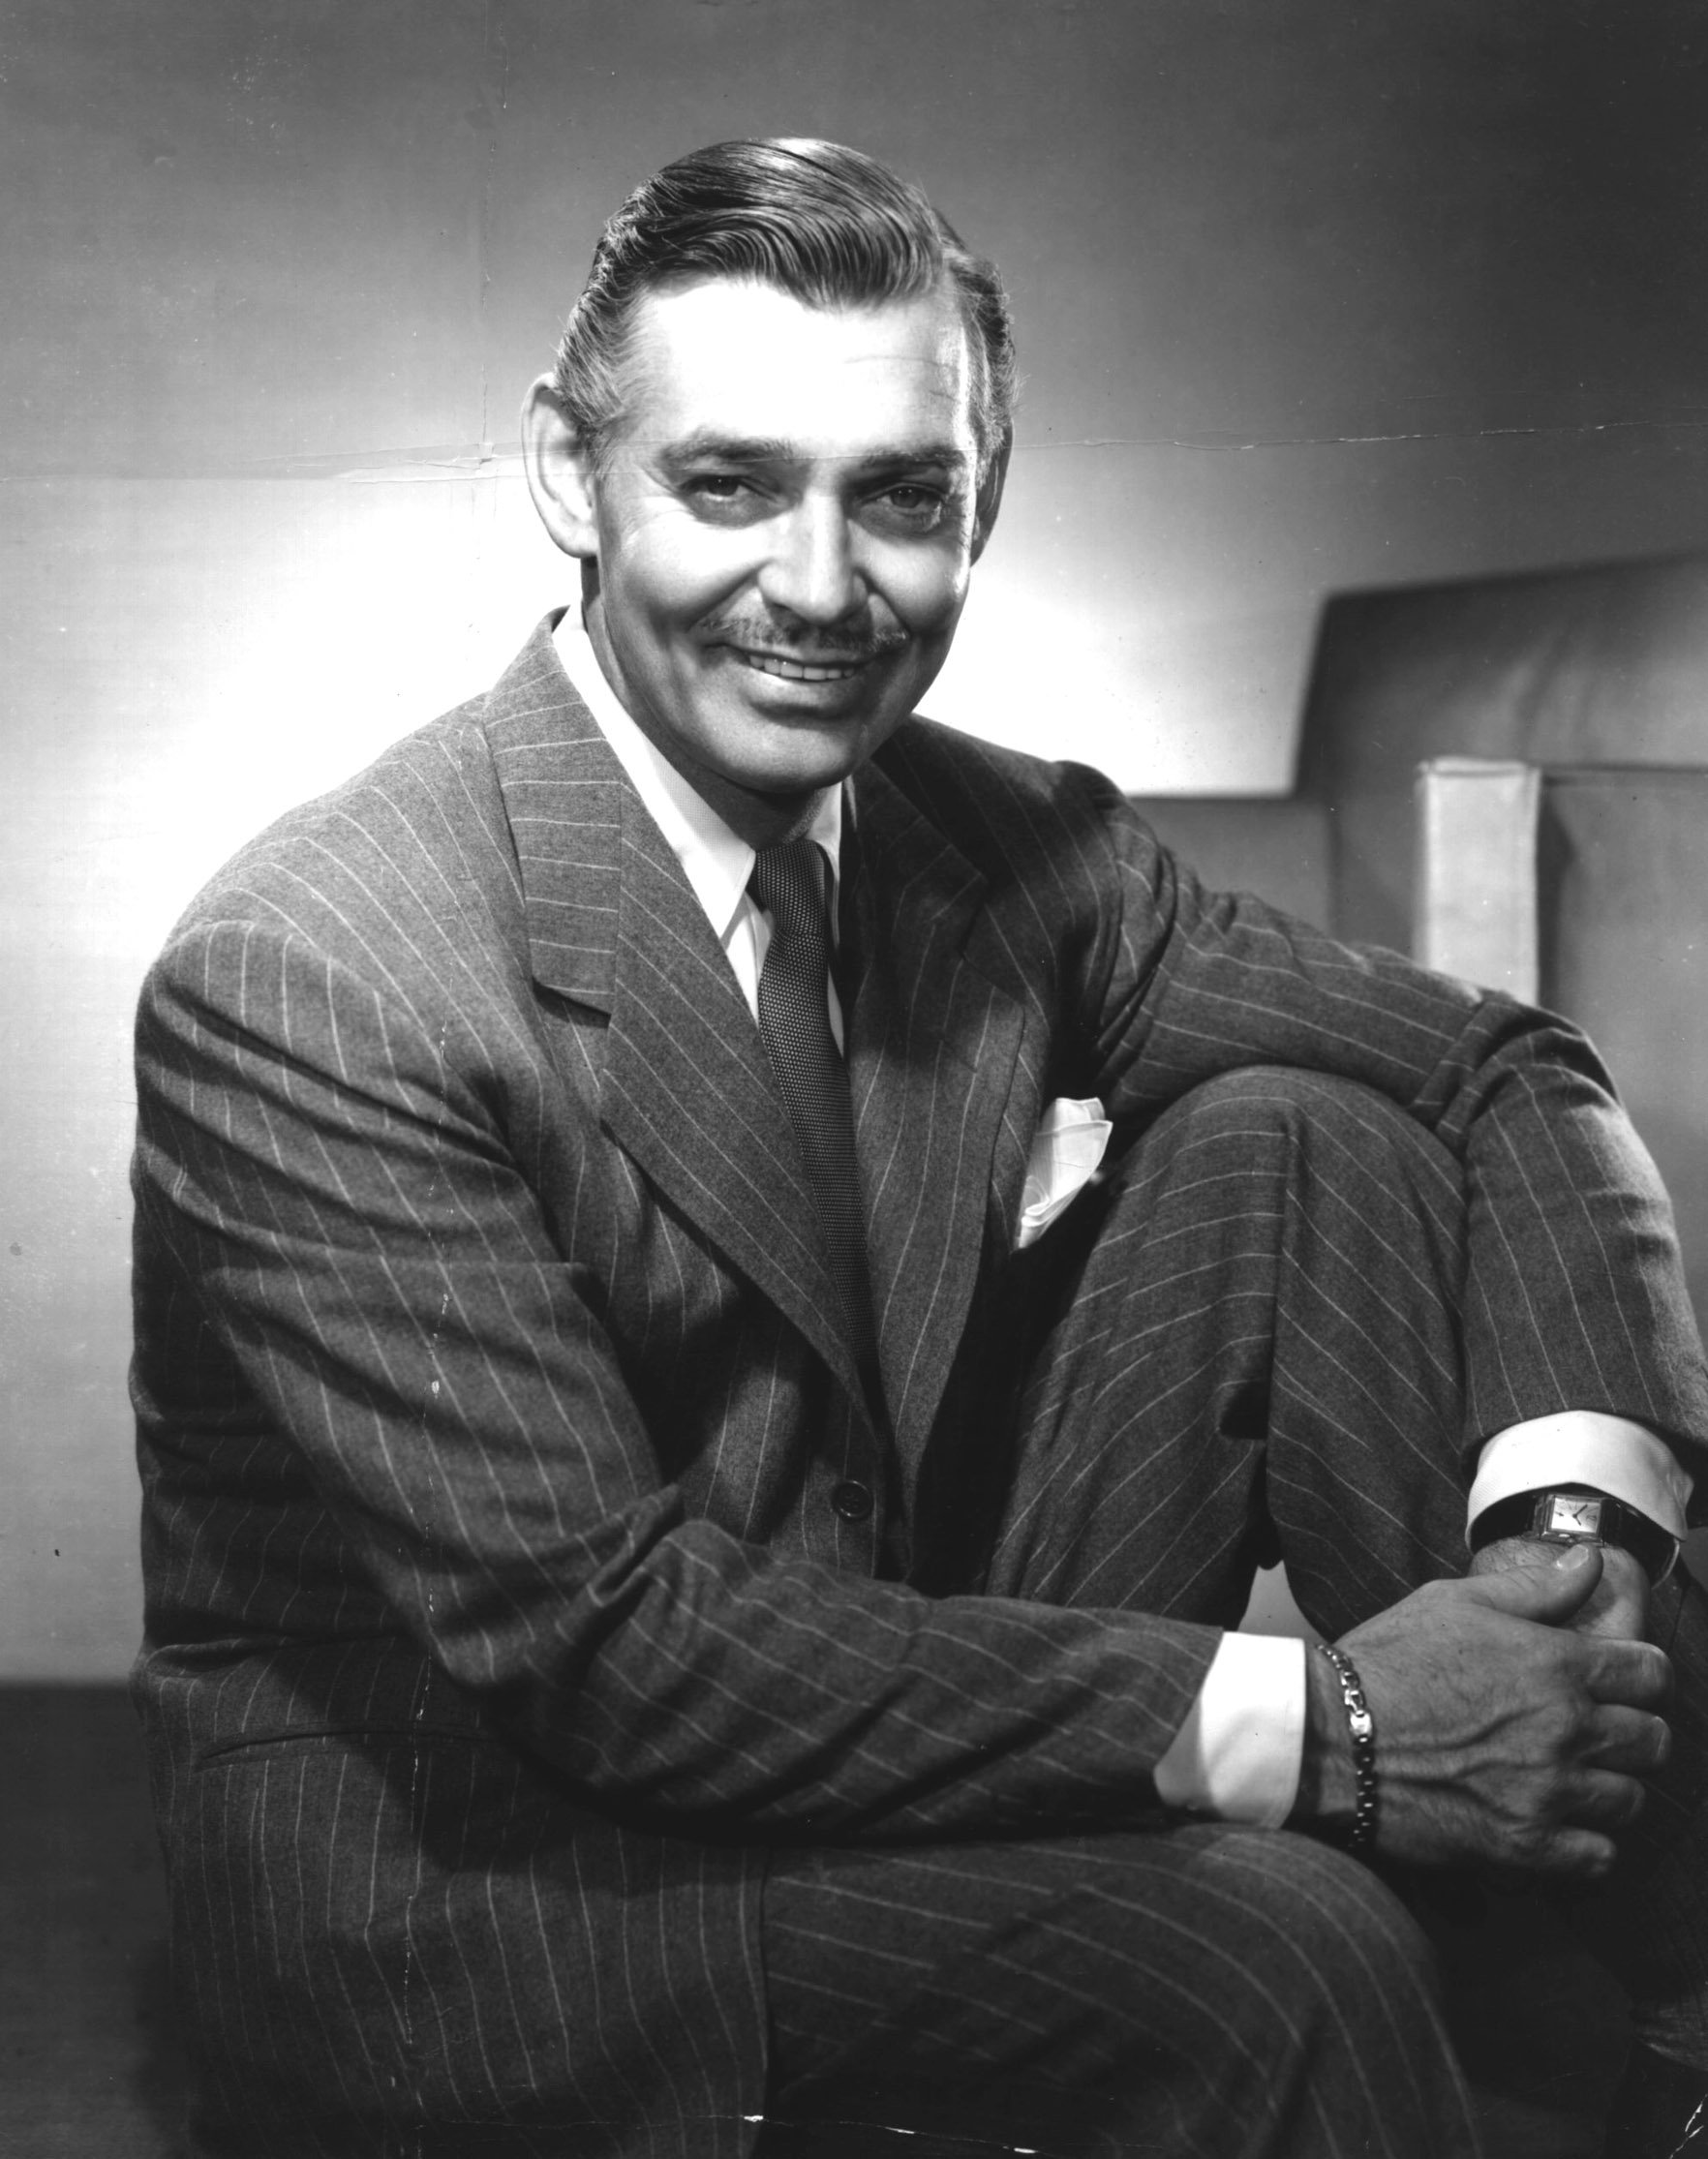 Werbefoto von Clark Gable um 1940 | Quelle: Getty Images